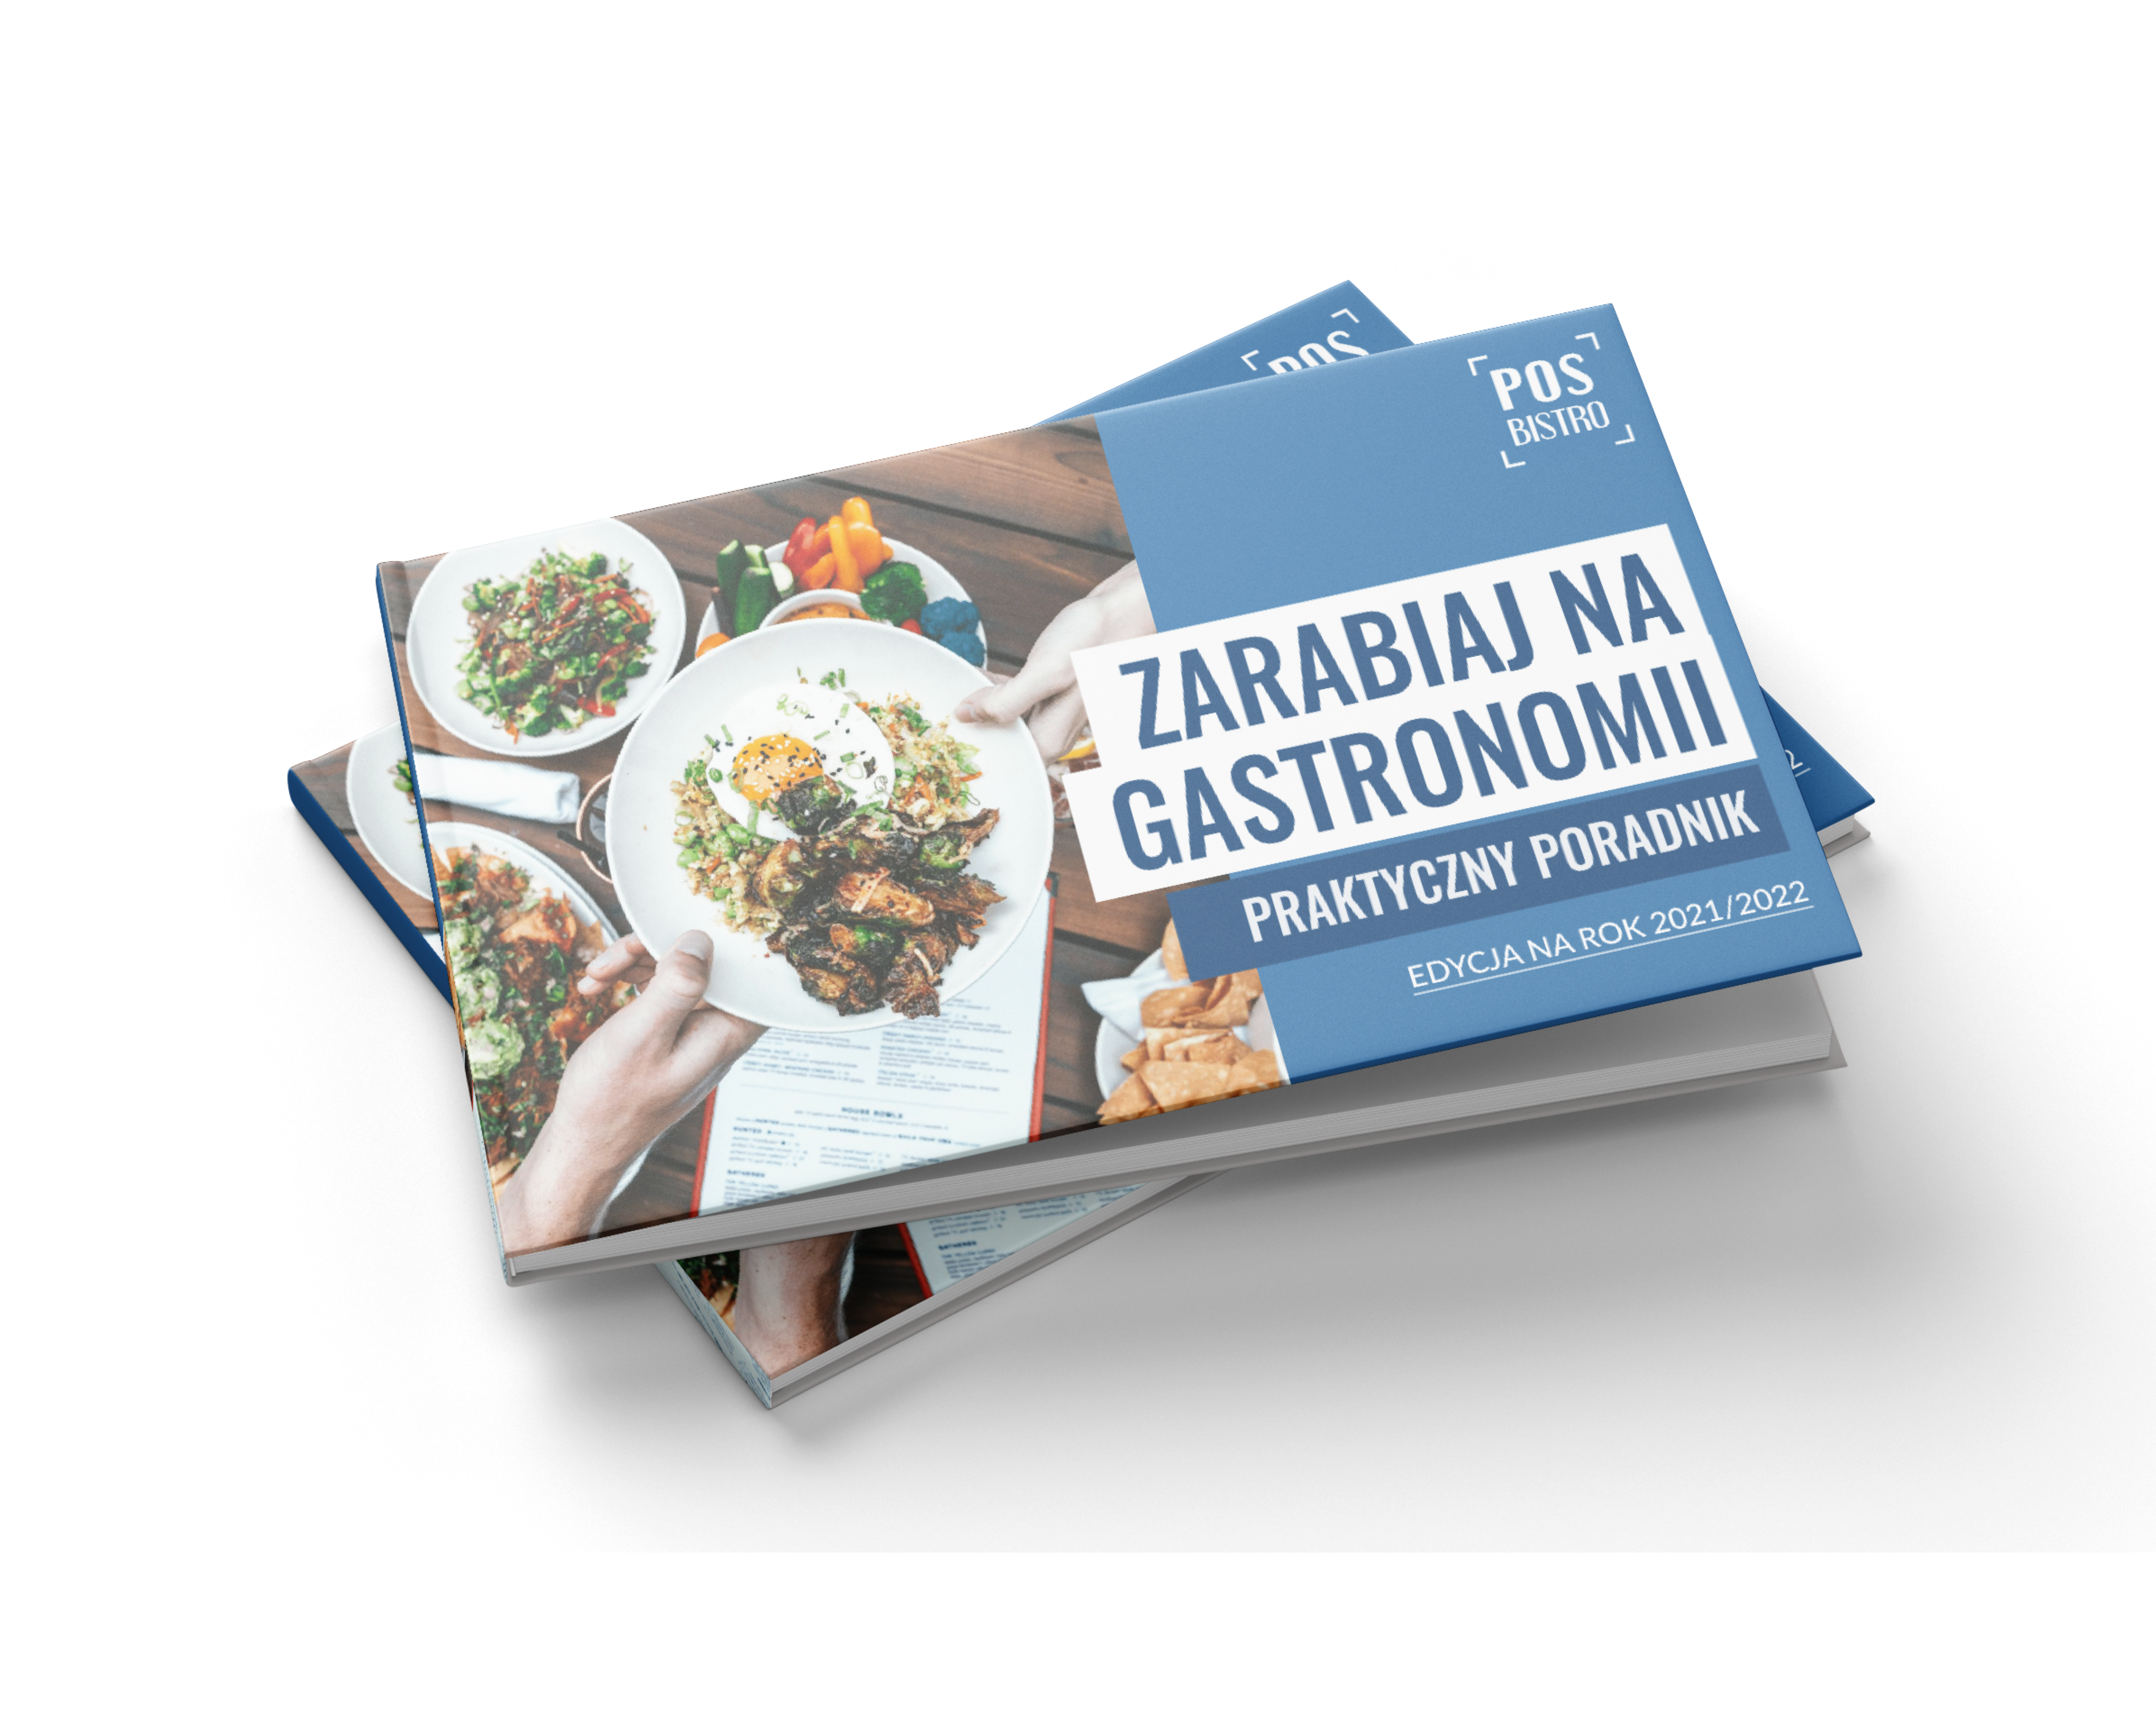 E-book Jak zarabiać na gastronomii?